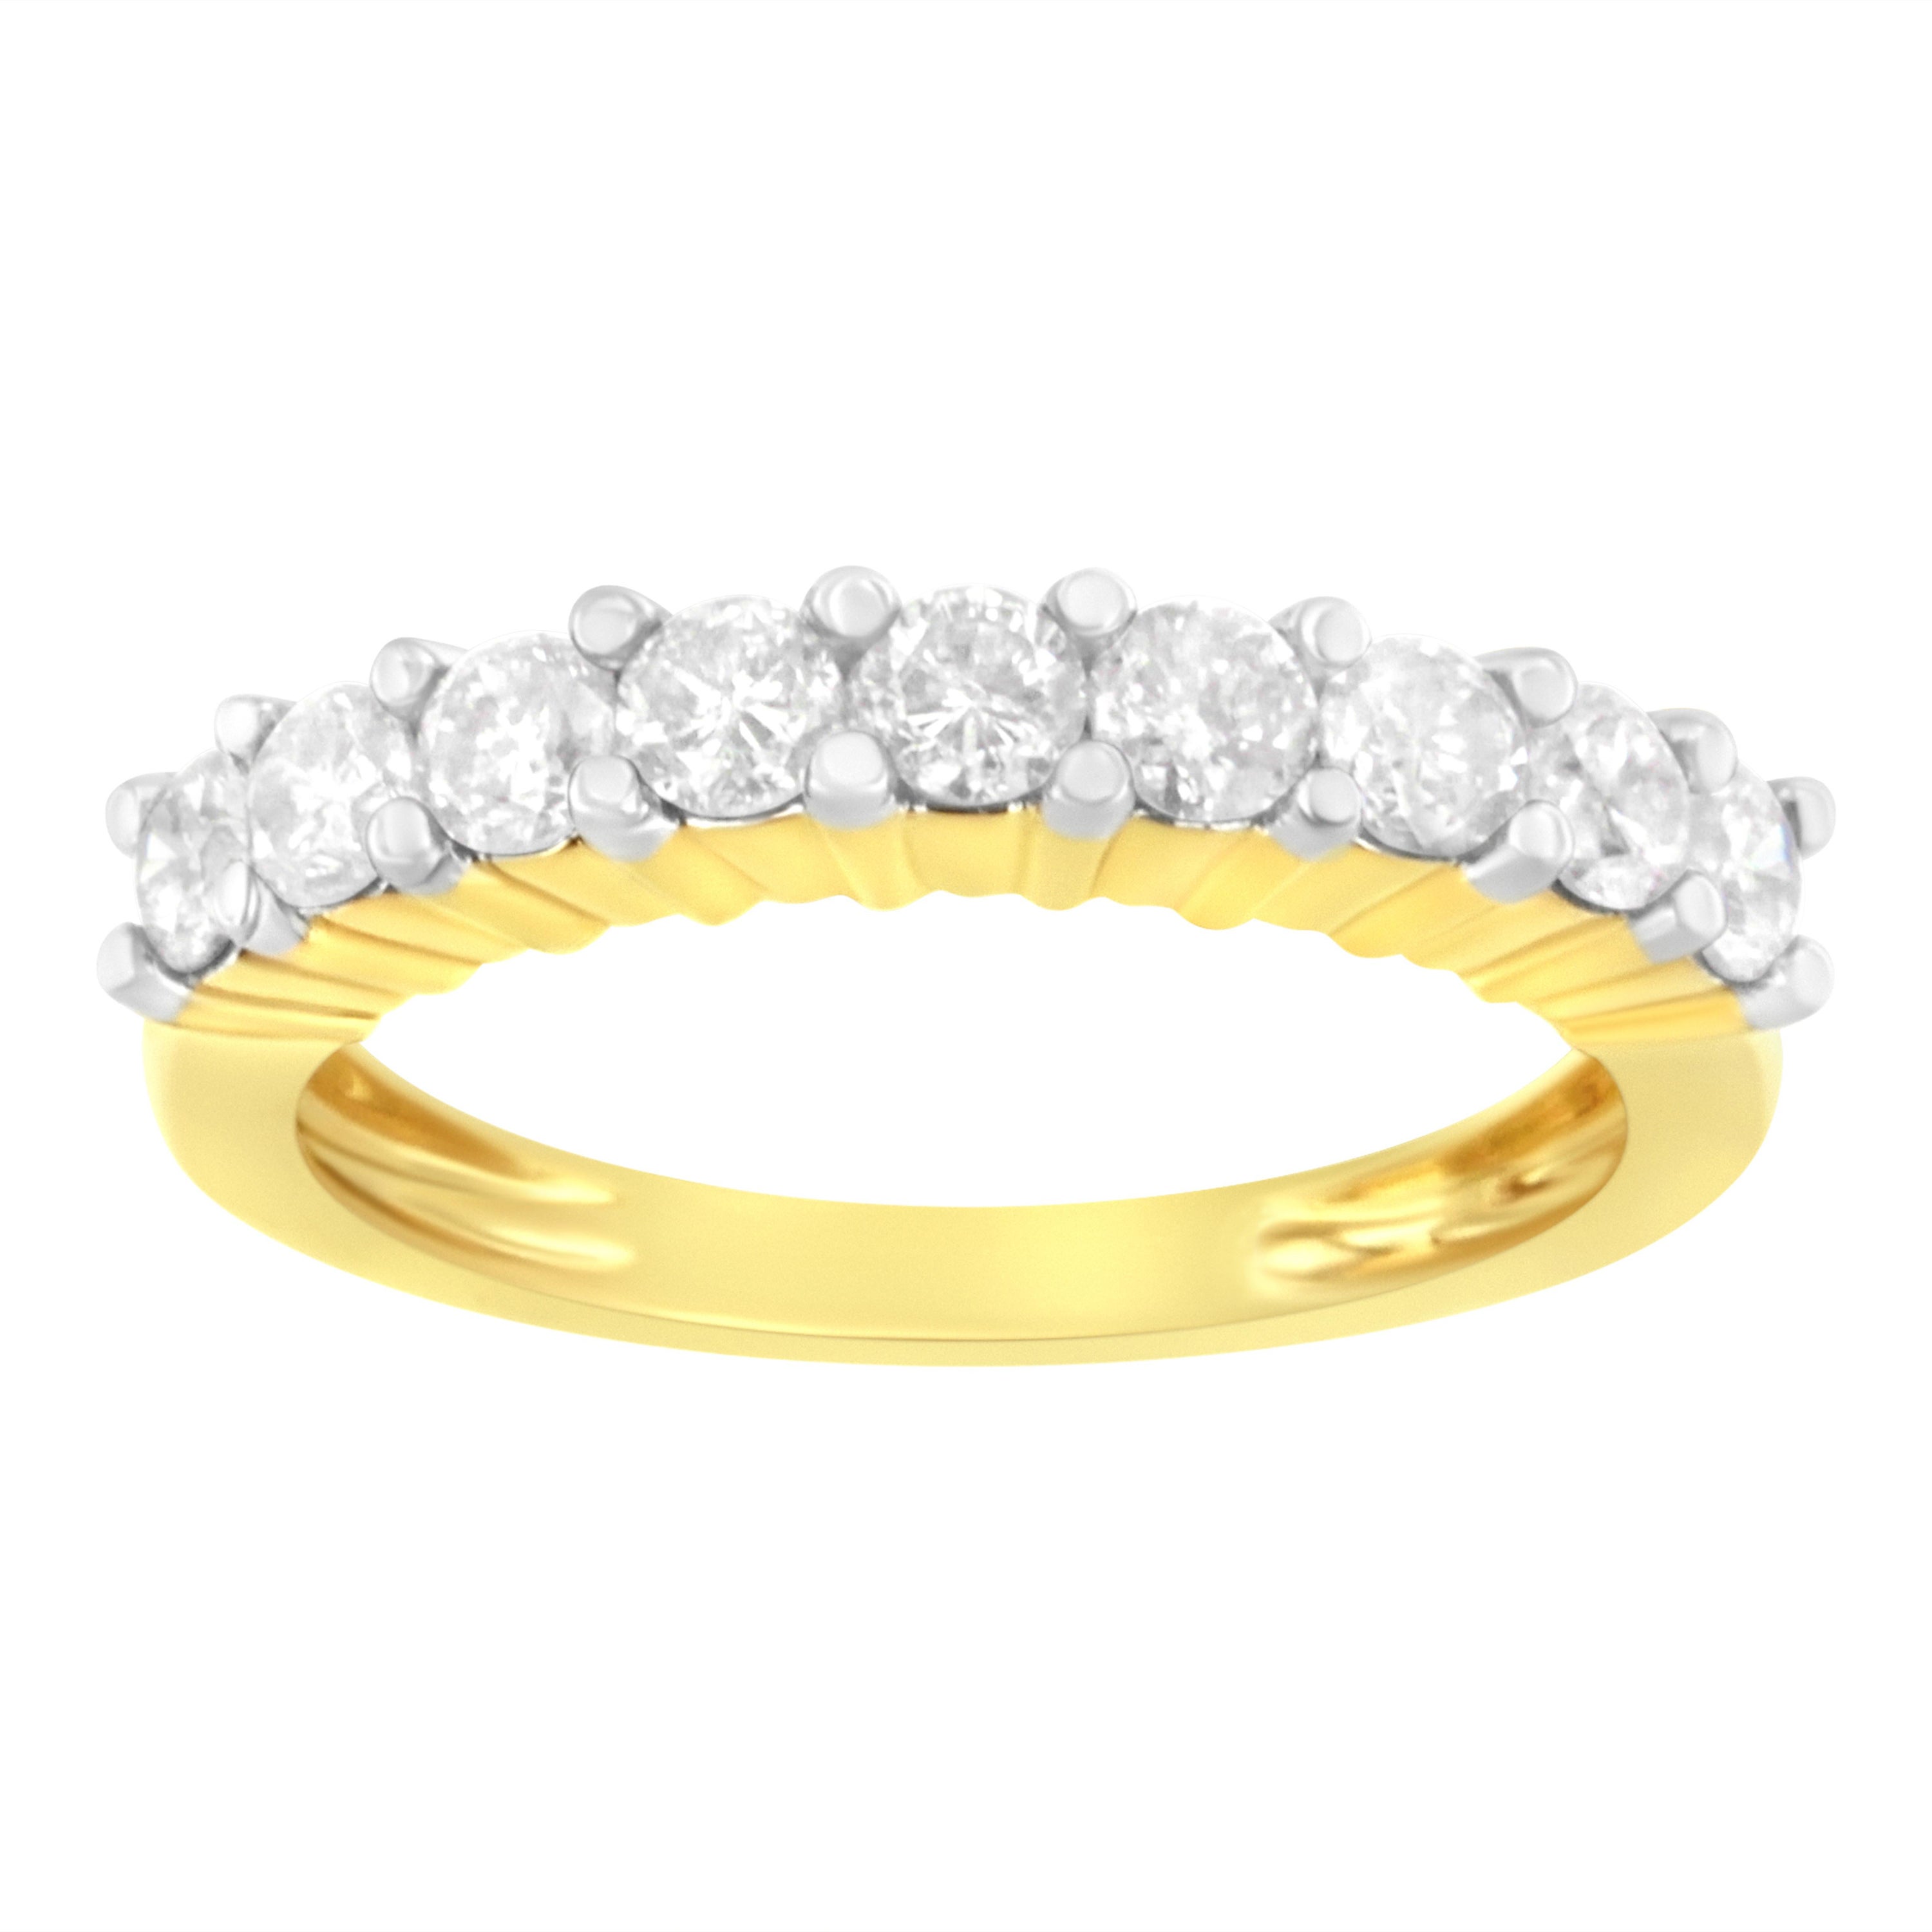 IGI zertifizierter 10KT Gelbgold 1 cttw Diamant-Ring